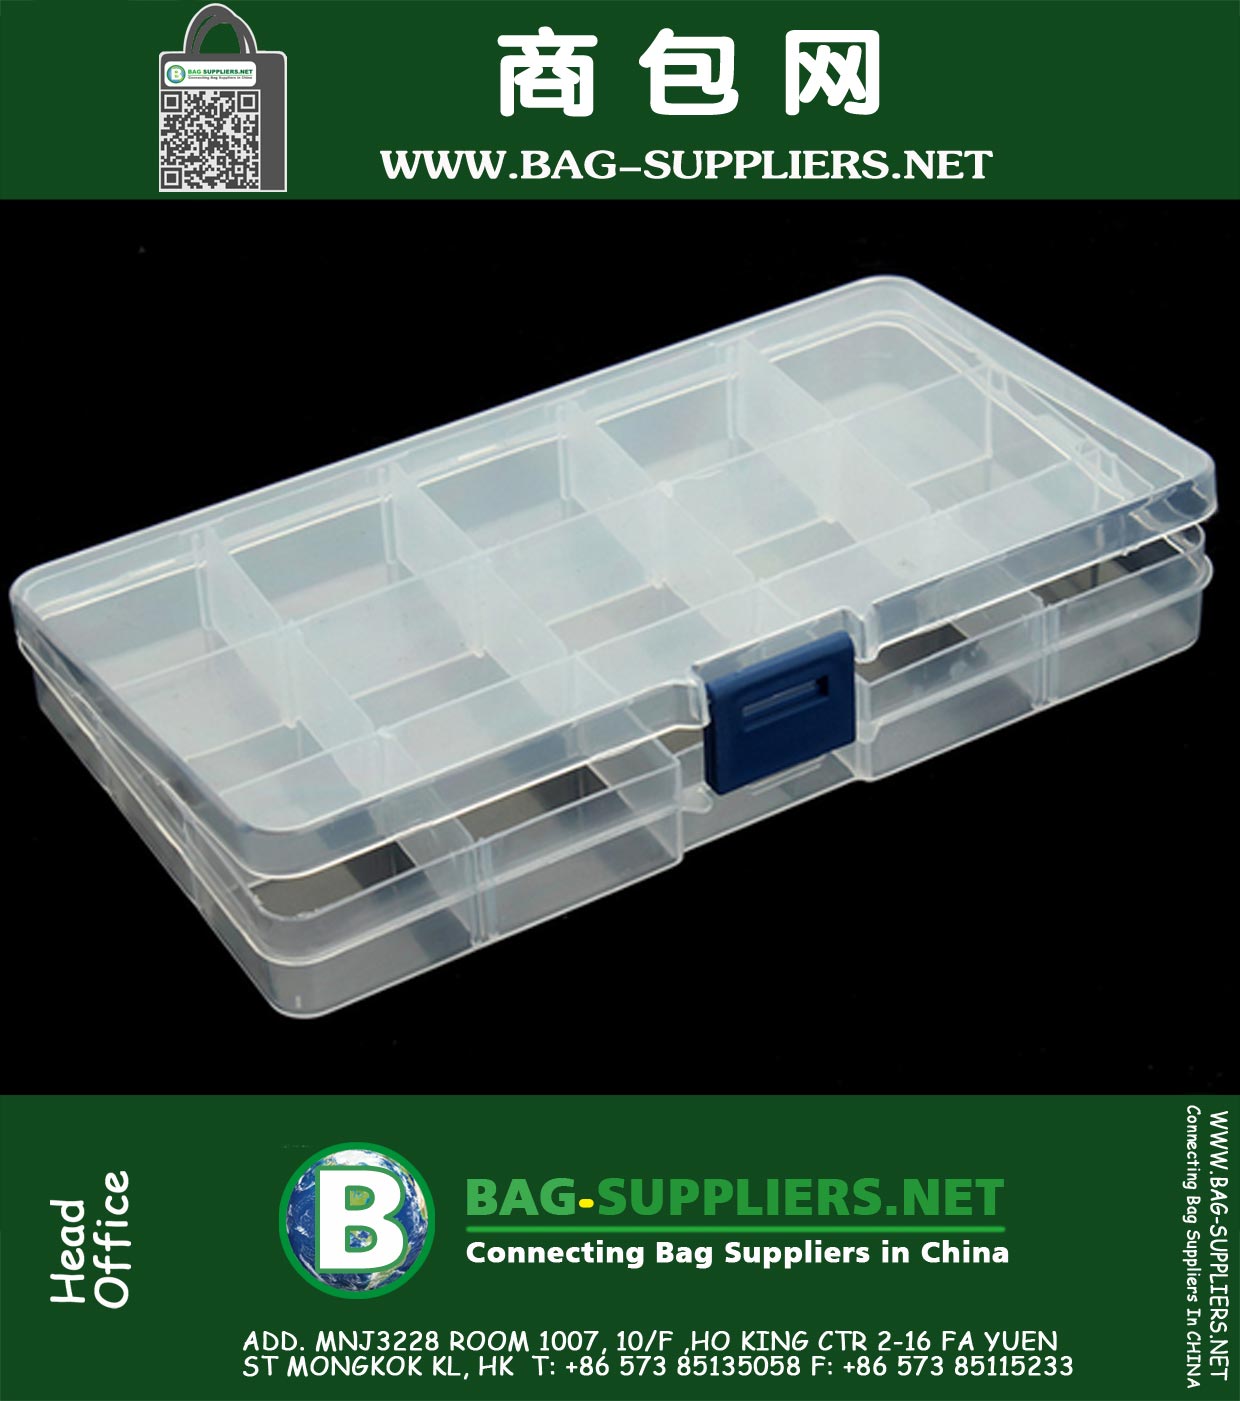 Einstellbare 1PC 15 Zellen Fach Plastikaufbewahrungsbehälter-Kasten Schmuck Werkzeug Perlen Tiny Stuff Container Taschen für Schmuck